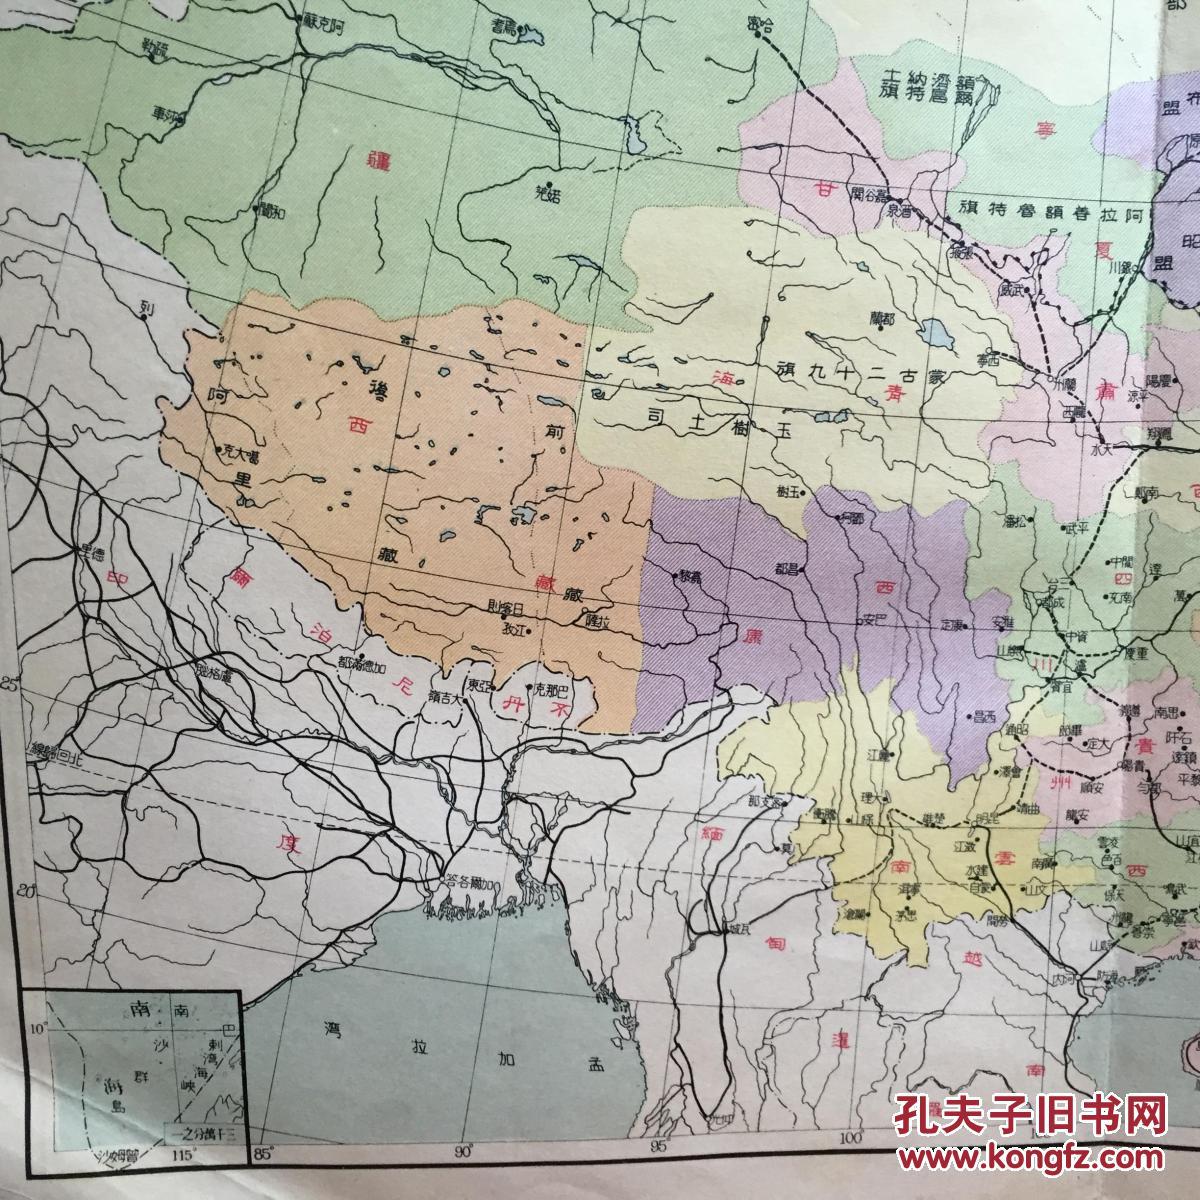 民国版 中华民国地图 政治区域图 民国政治区域图 8开 内有西康,台湾图片